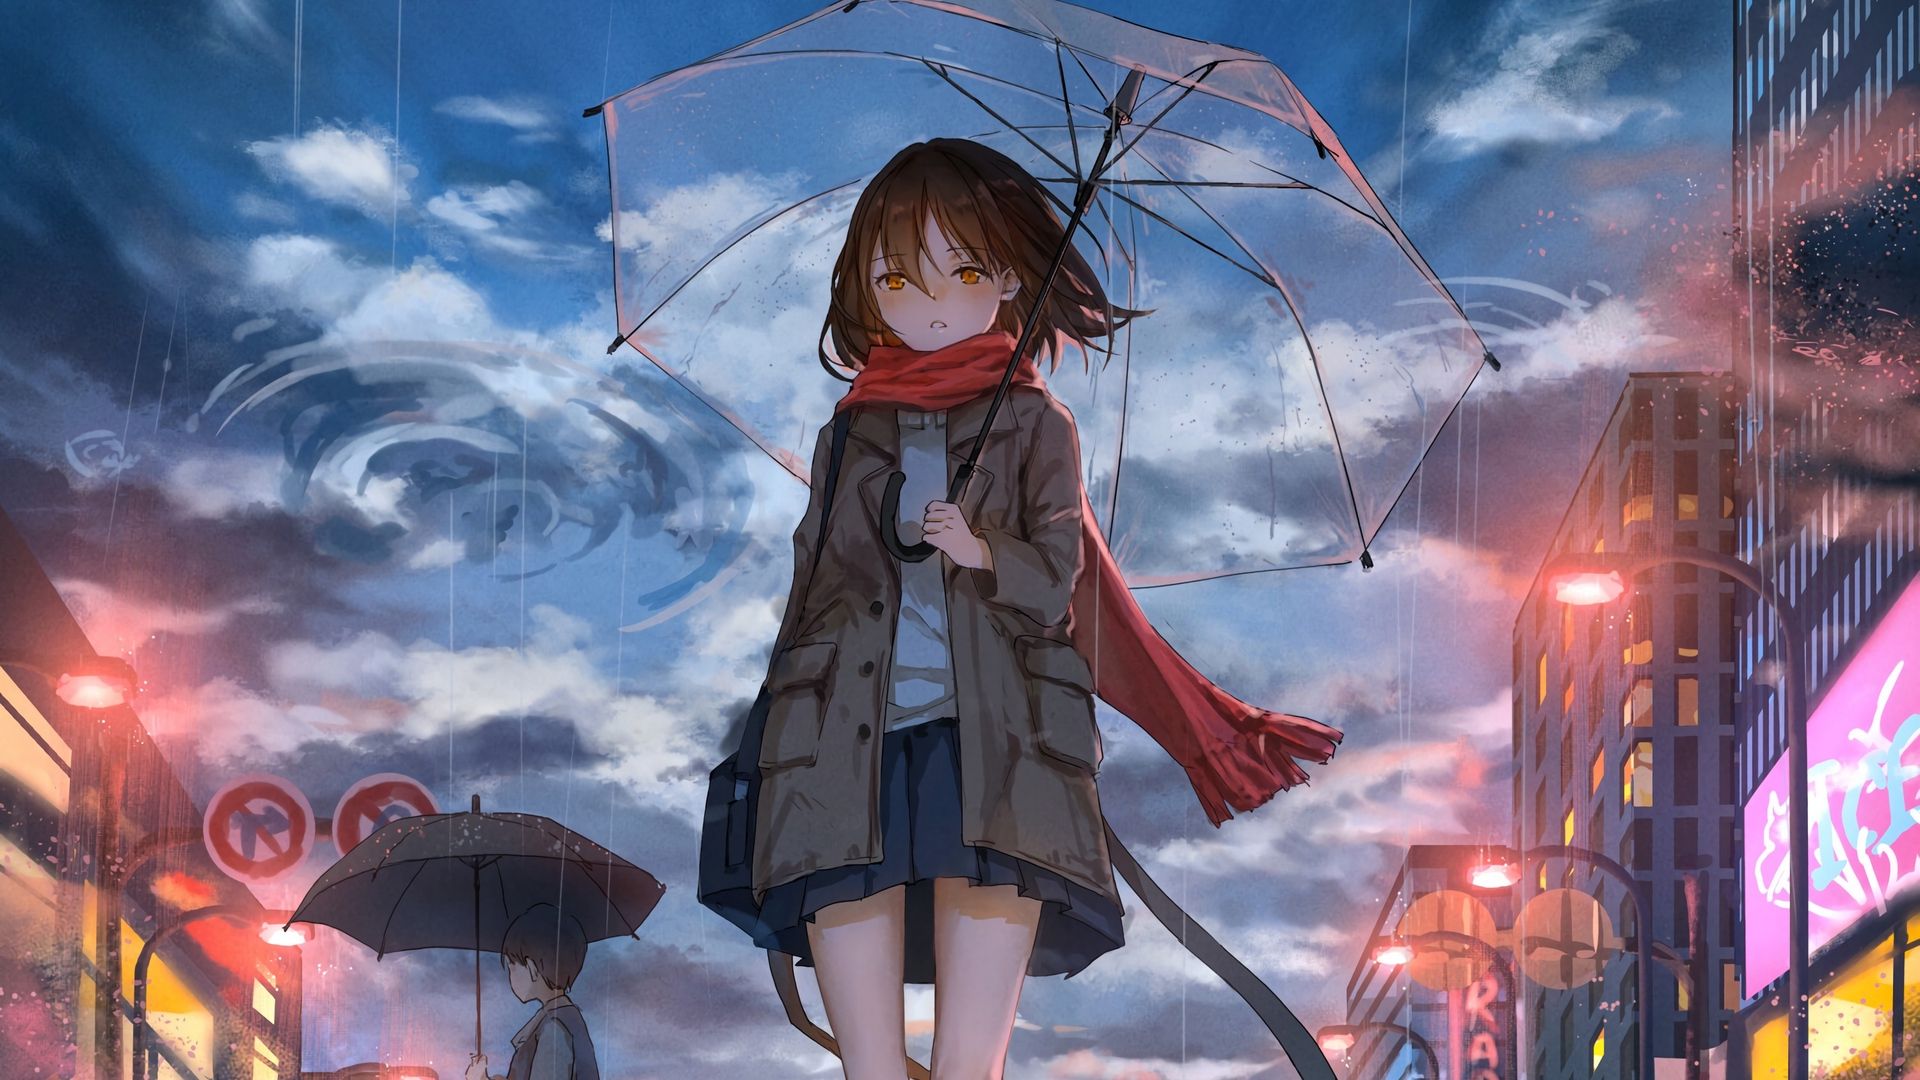 Wallpaper Girl, Umbrella, Anime, Rain, Sadness Girl With